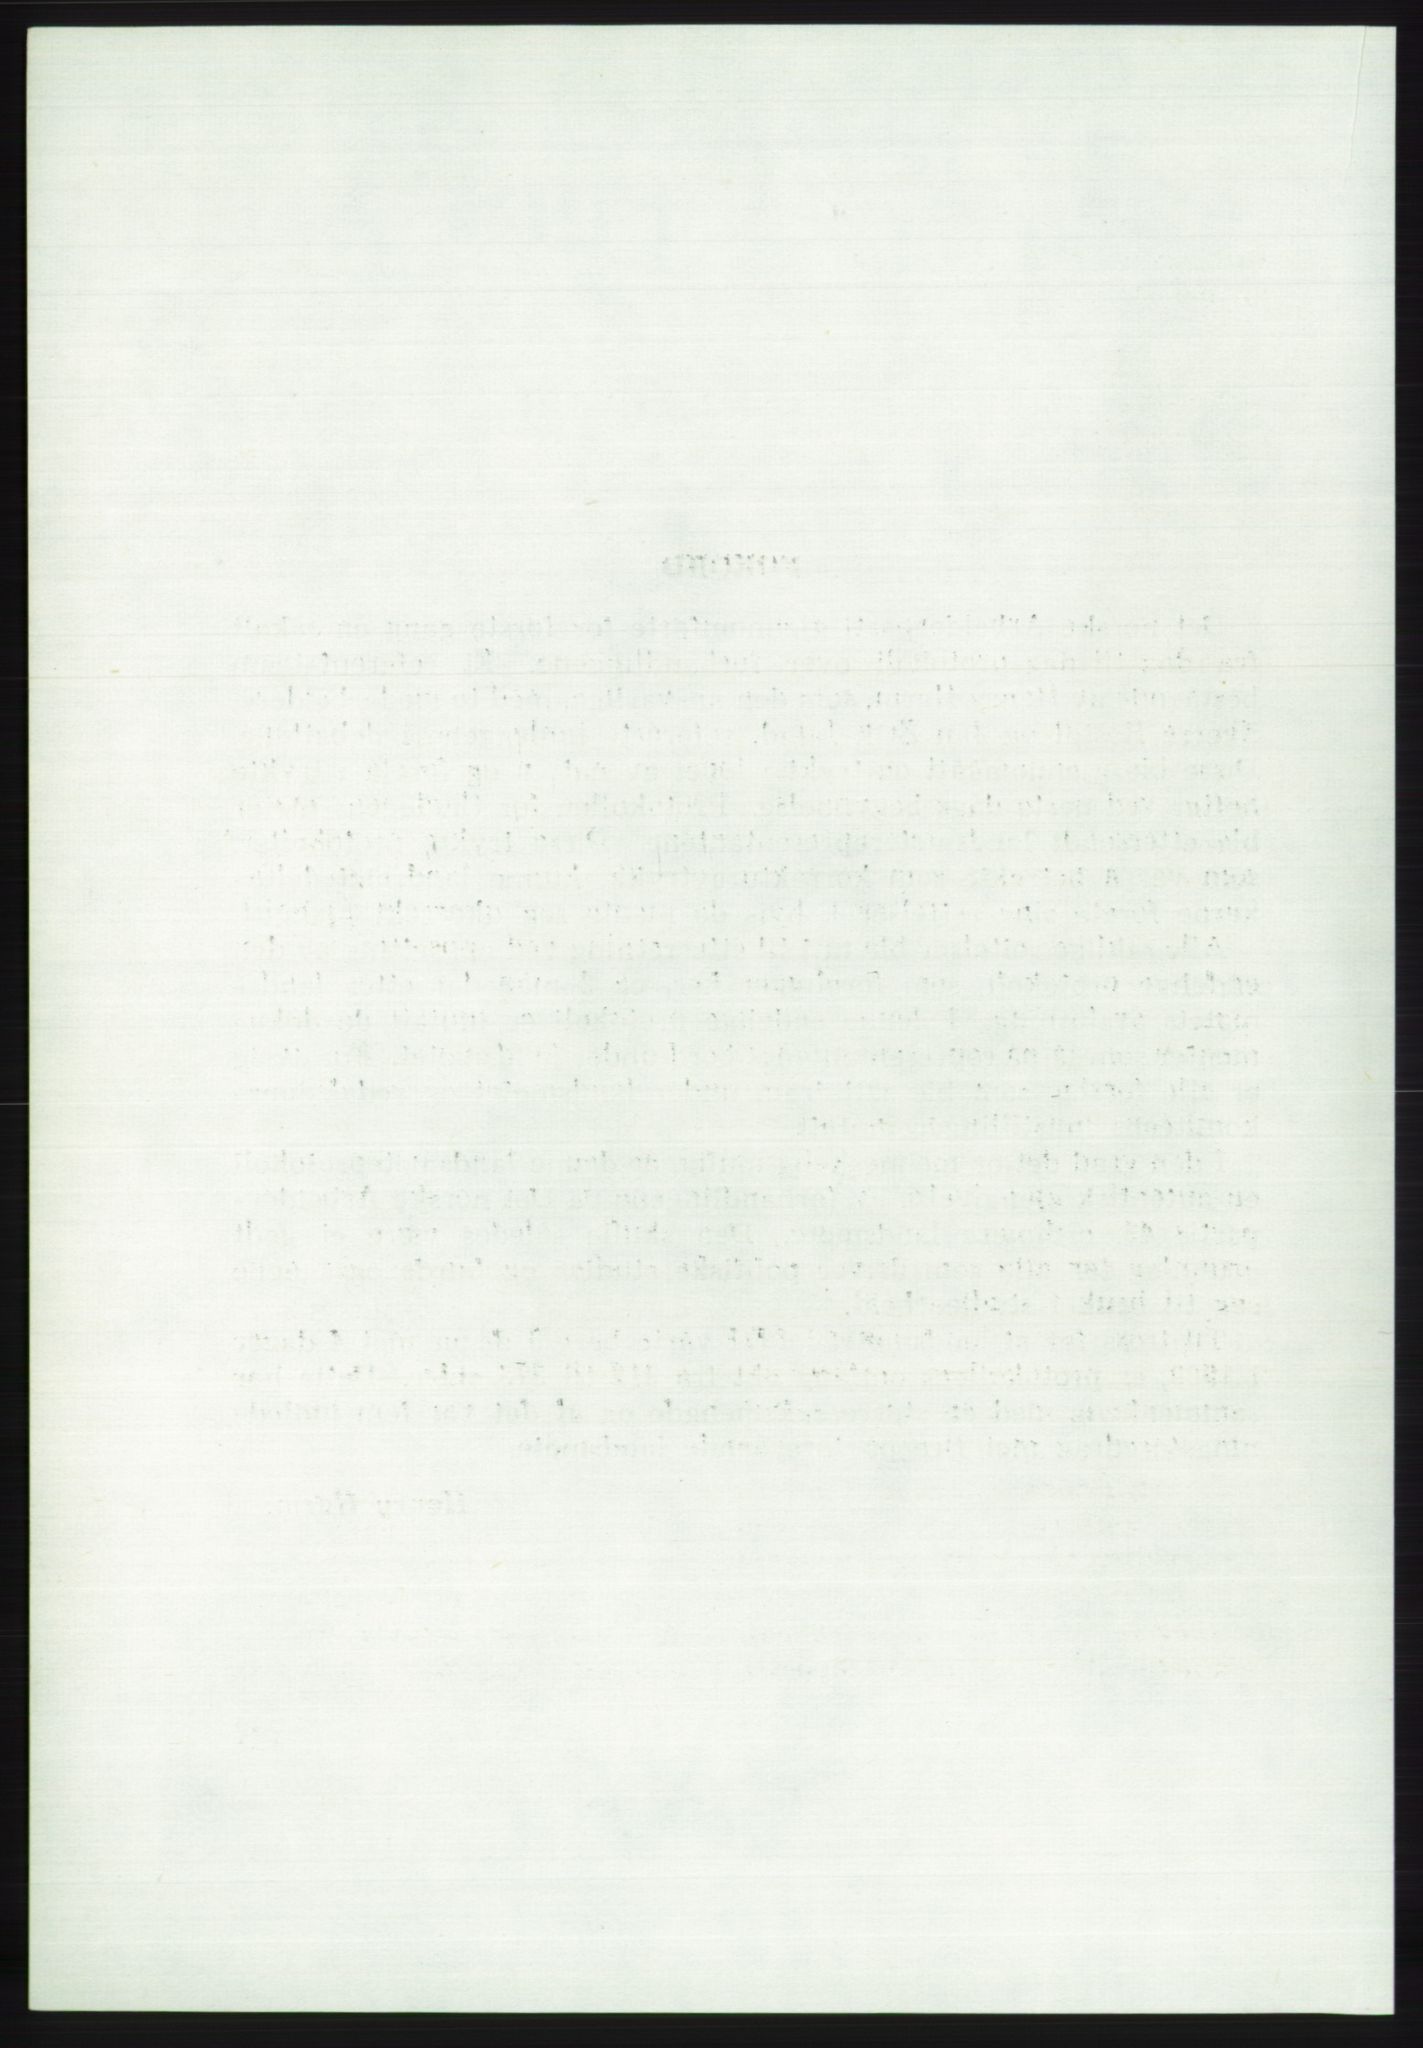 Det norske Arbeiderparti - publikasjoner, AAB/-/-/-: Protokoll over forhandlingene på det 43. ordinære landsmøte 9.-11. mai 1971 i Oslo, 1971, s. 8